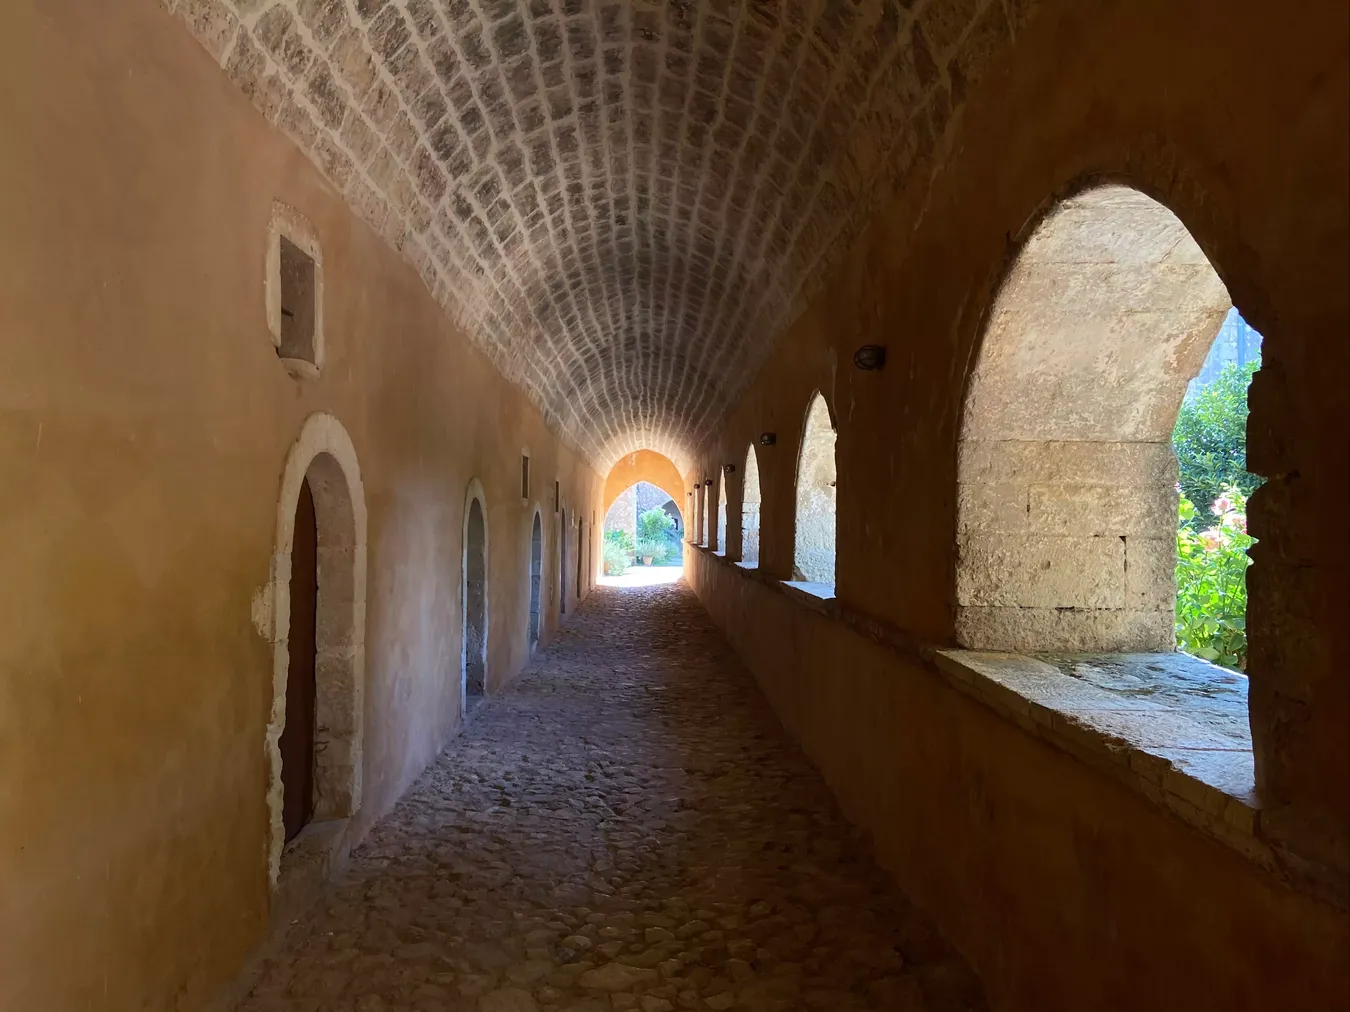 Pasillo que conducen a las habitaciones del monasterio.